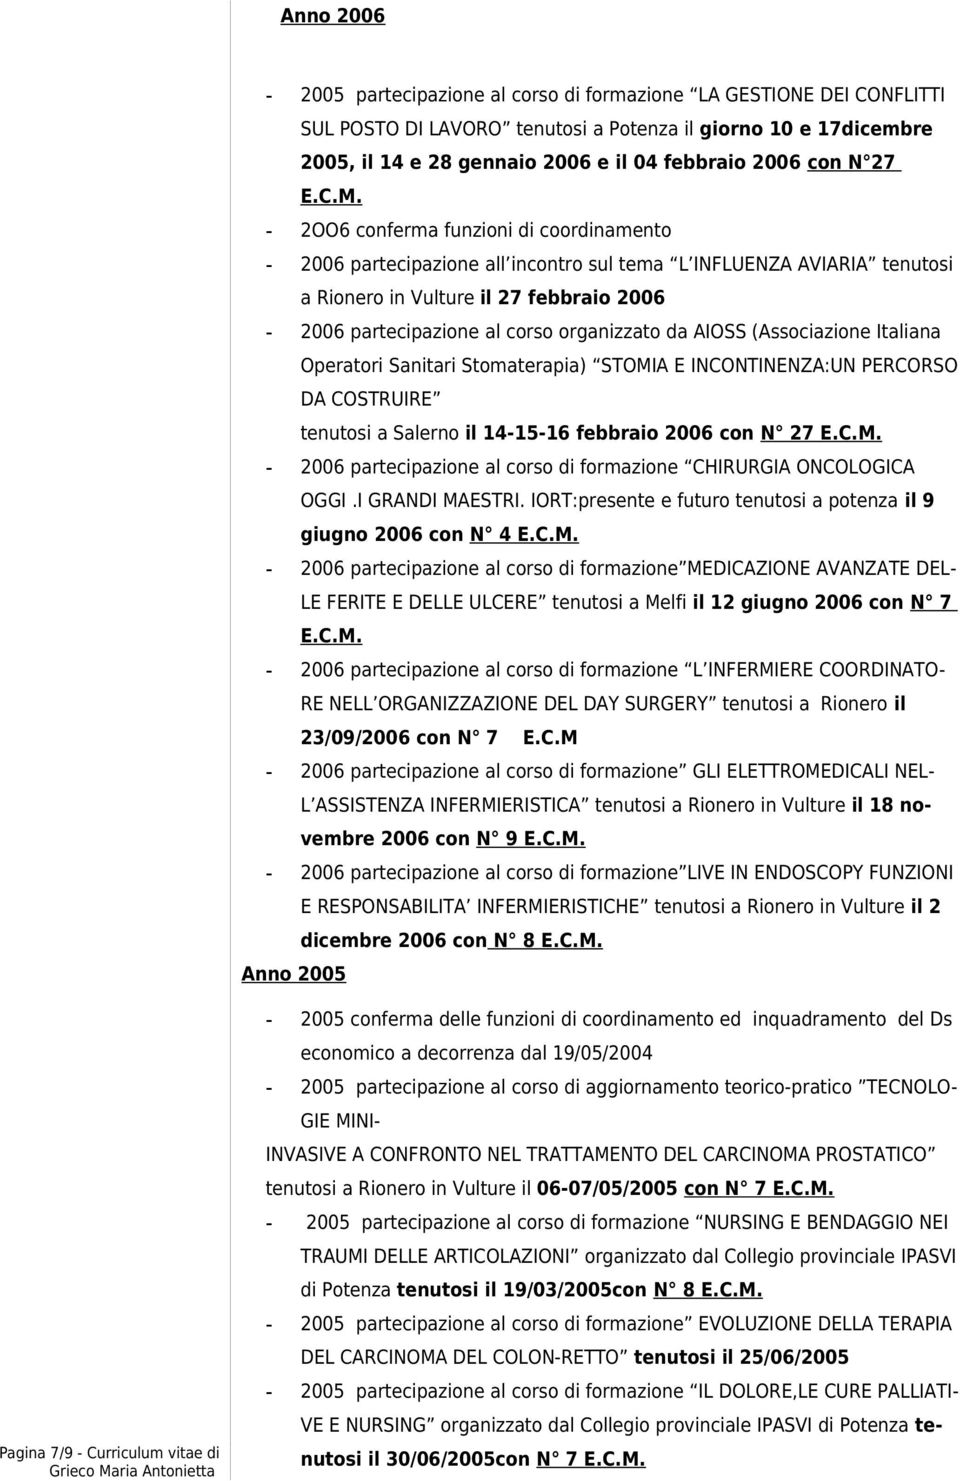 - 2OO6 conferma funzioni di coordinamento - 2006 partecipazione all incontro sul tema L INFLUENZA AVIARIA tenutosi a Rionero in Vulture il 27 febbraio 2006-2006 partecipazione al corso organizzato da